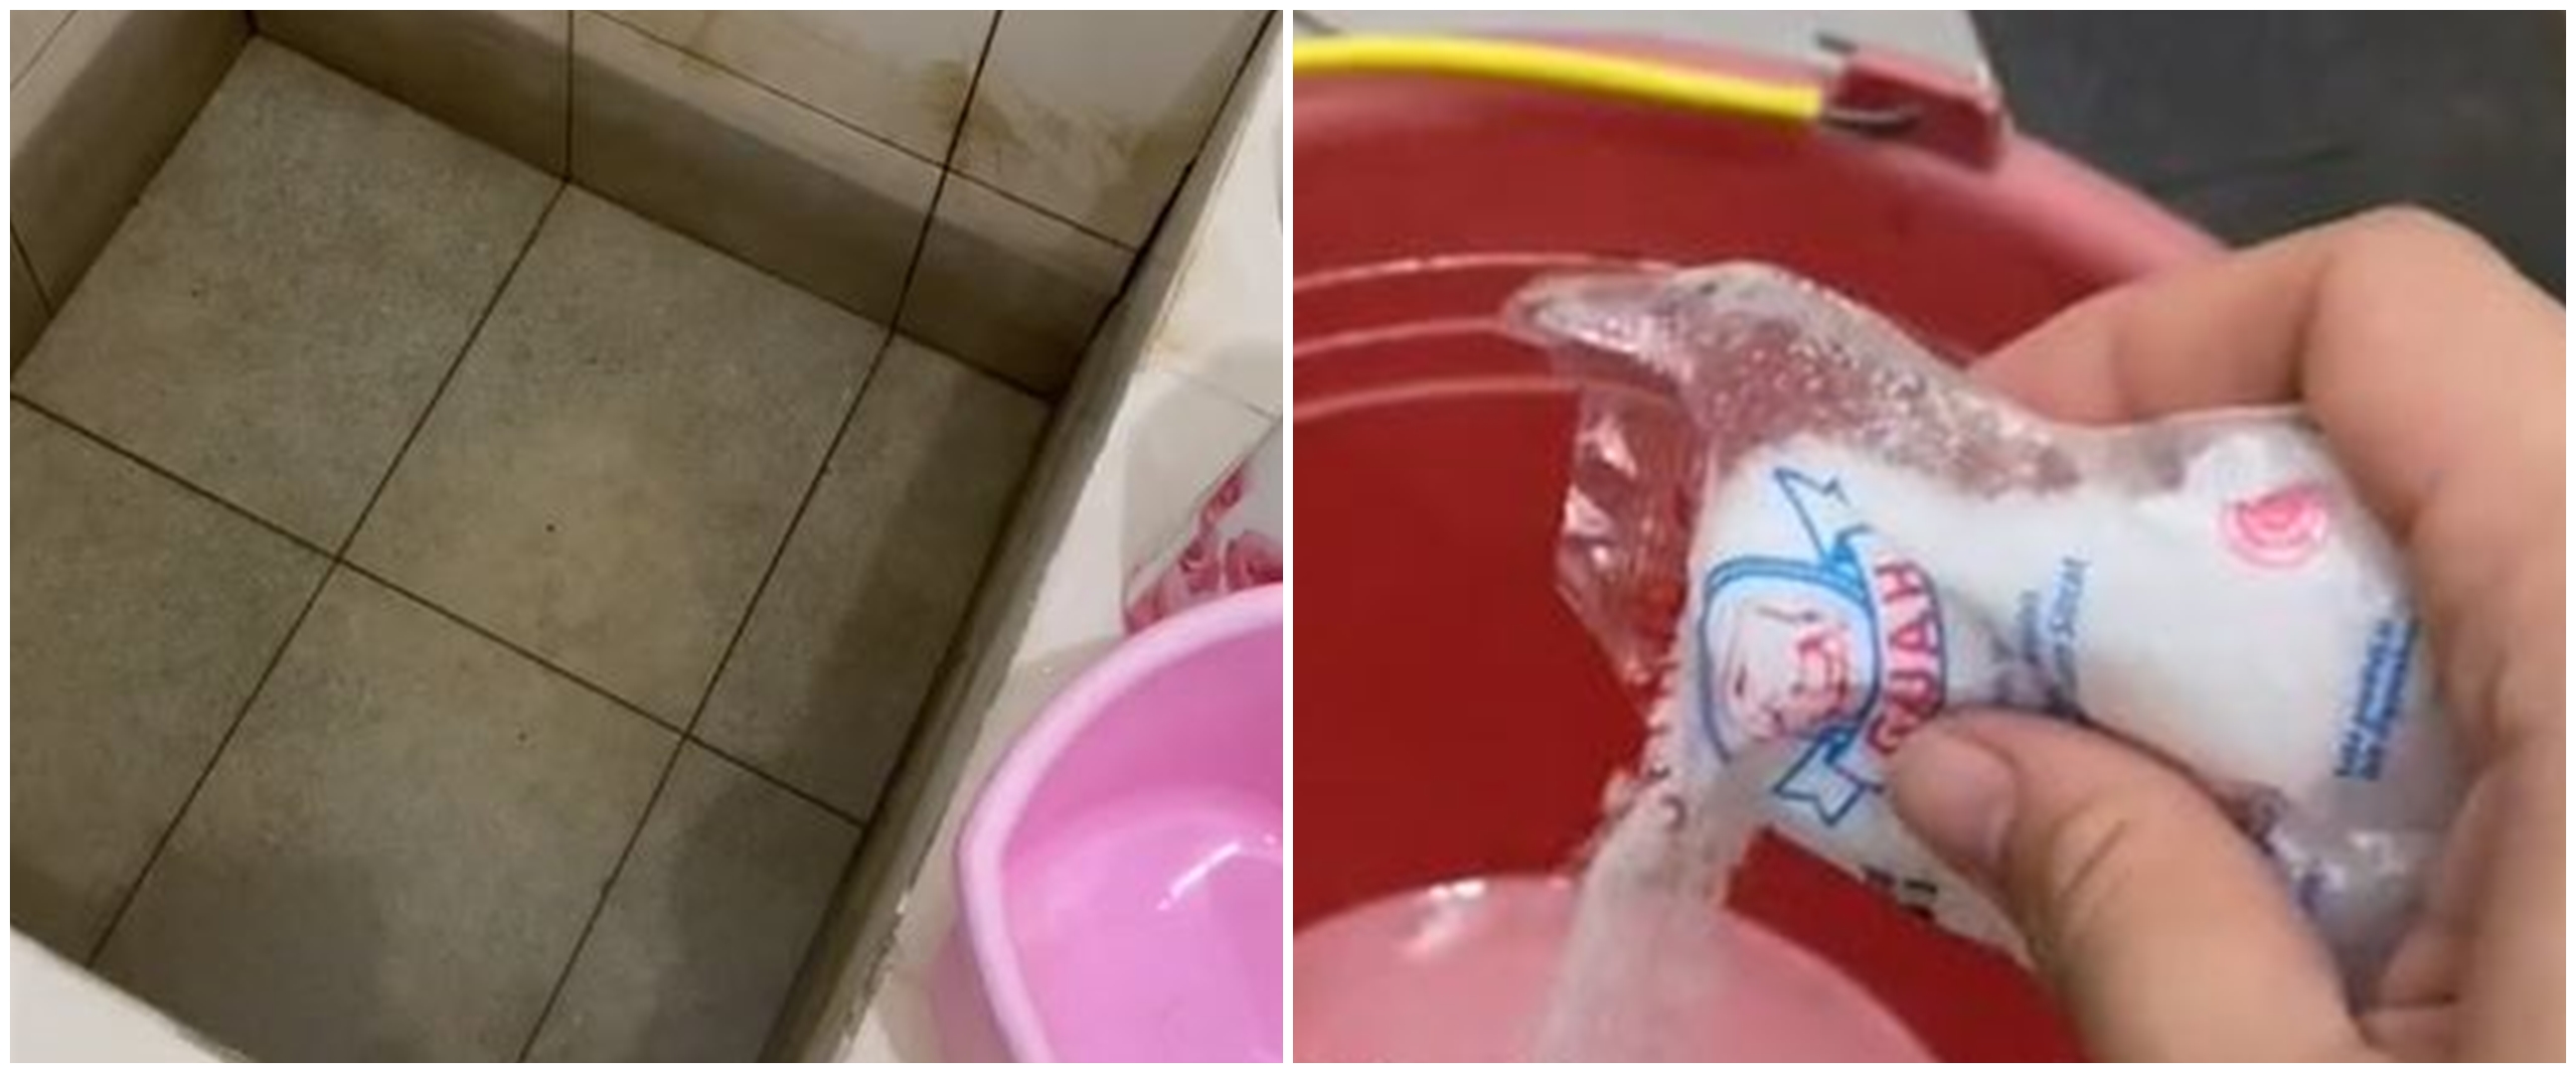 Nggak usah ribet pakai sikat, ini cara ampuh bersihkan kerak dalam bak mandi hanya pakai 2 bahan